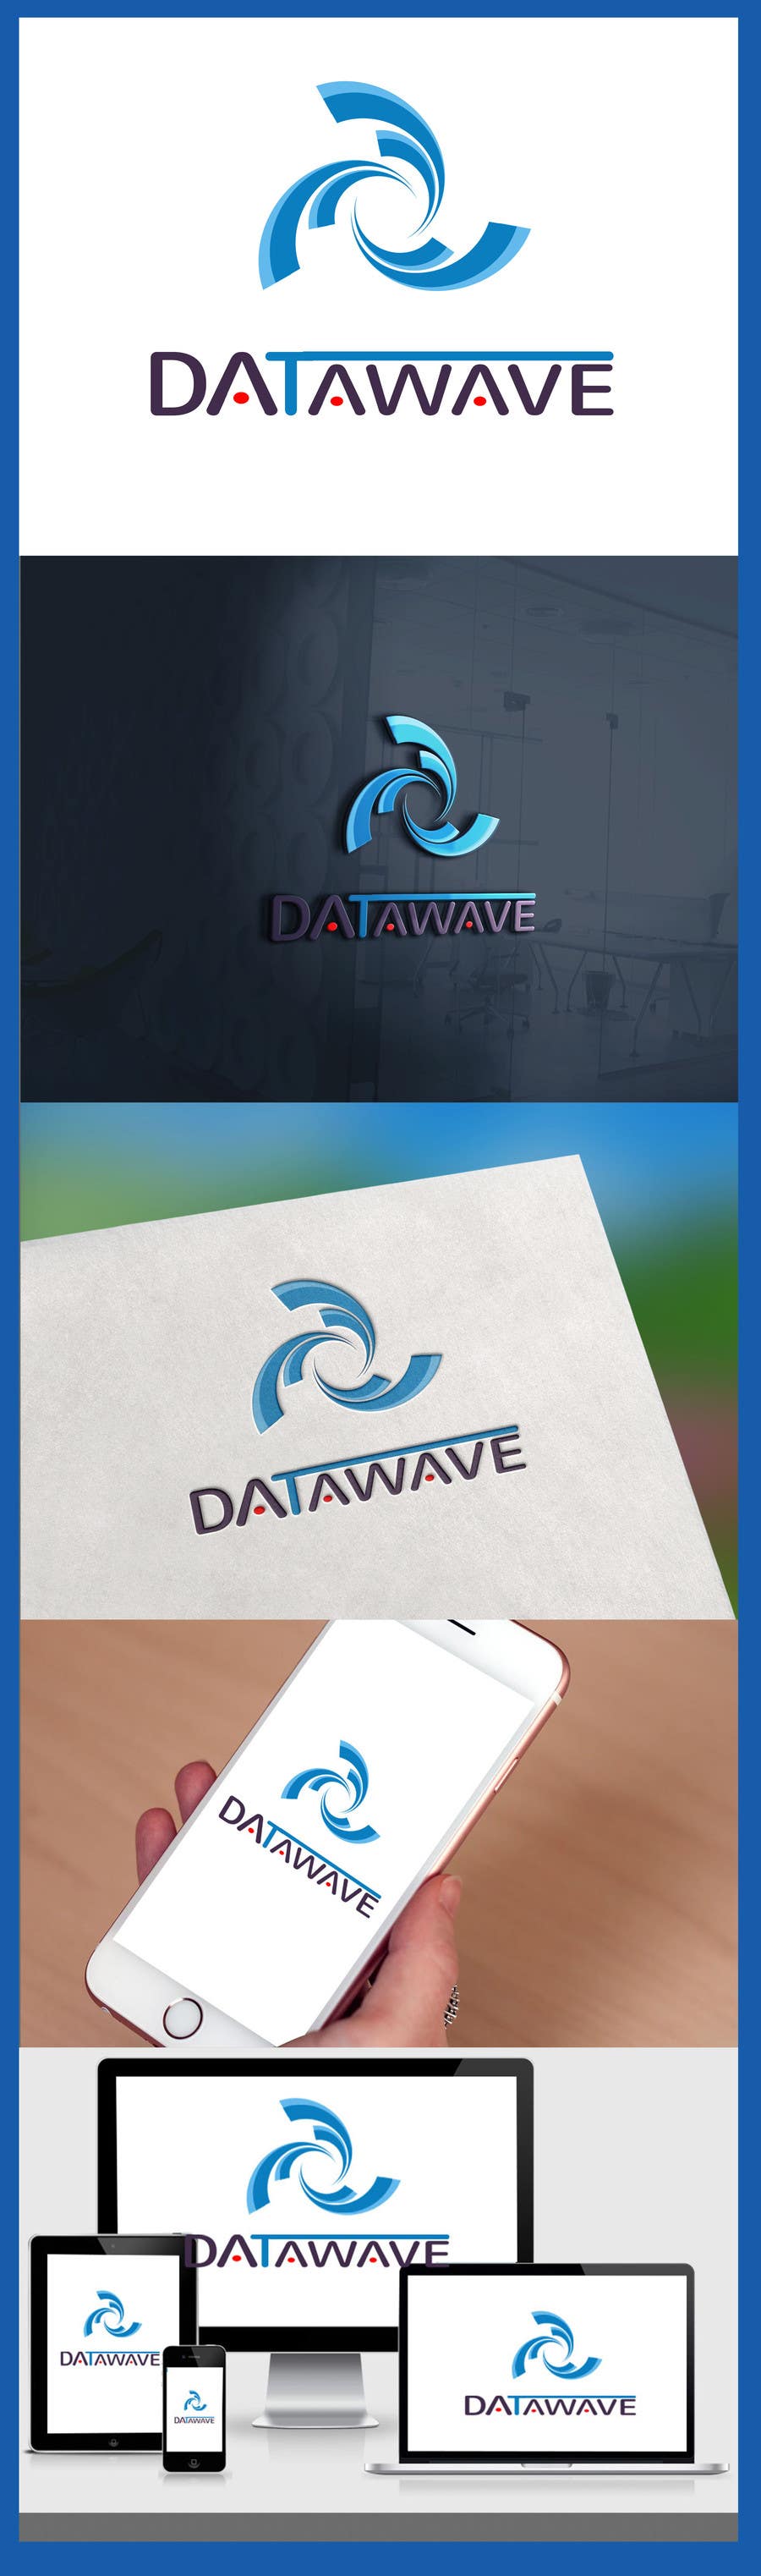 Kilpailutyö #315 kilpailussa                                                 Datawave.io - New Corporate Identity
                                            